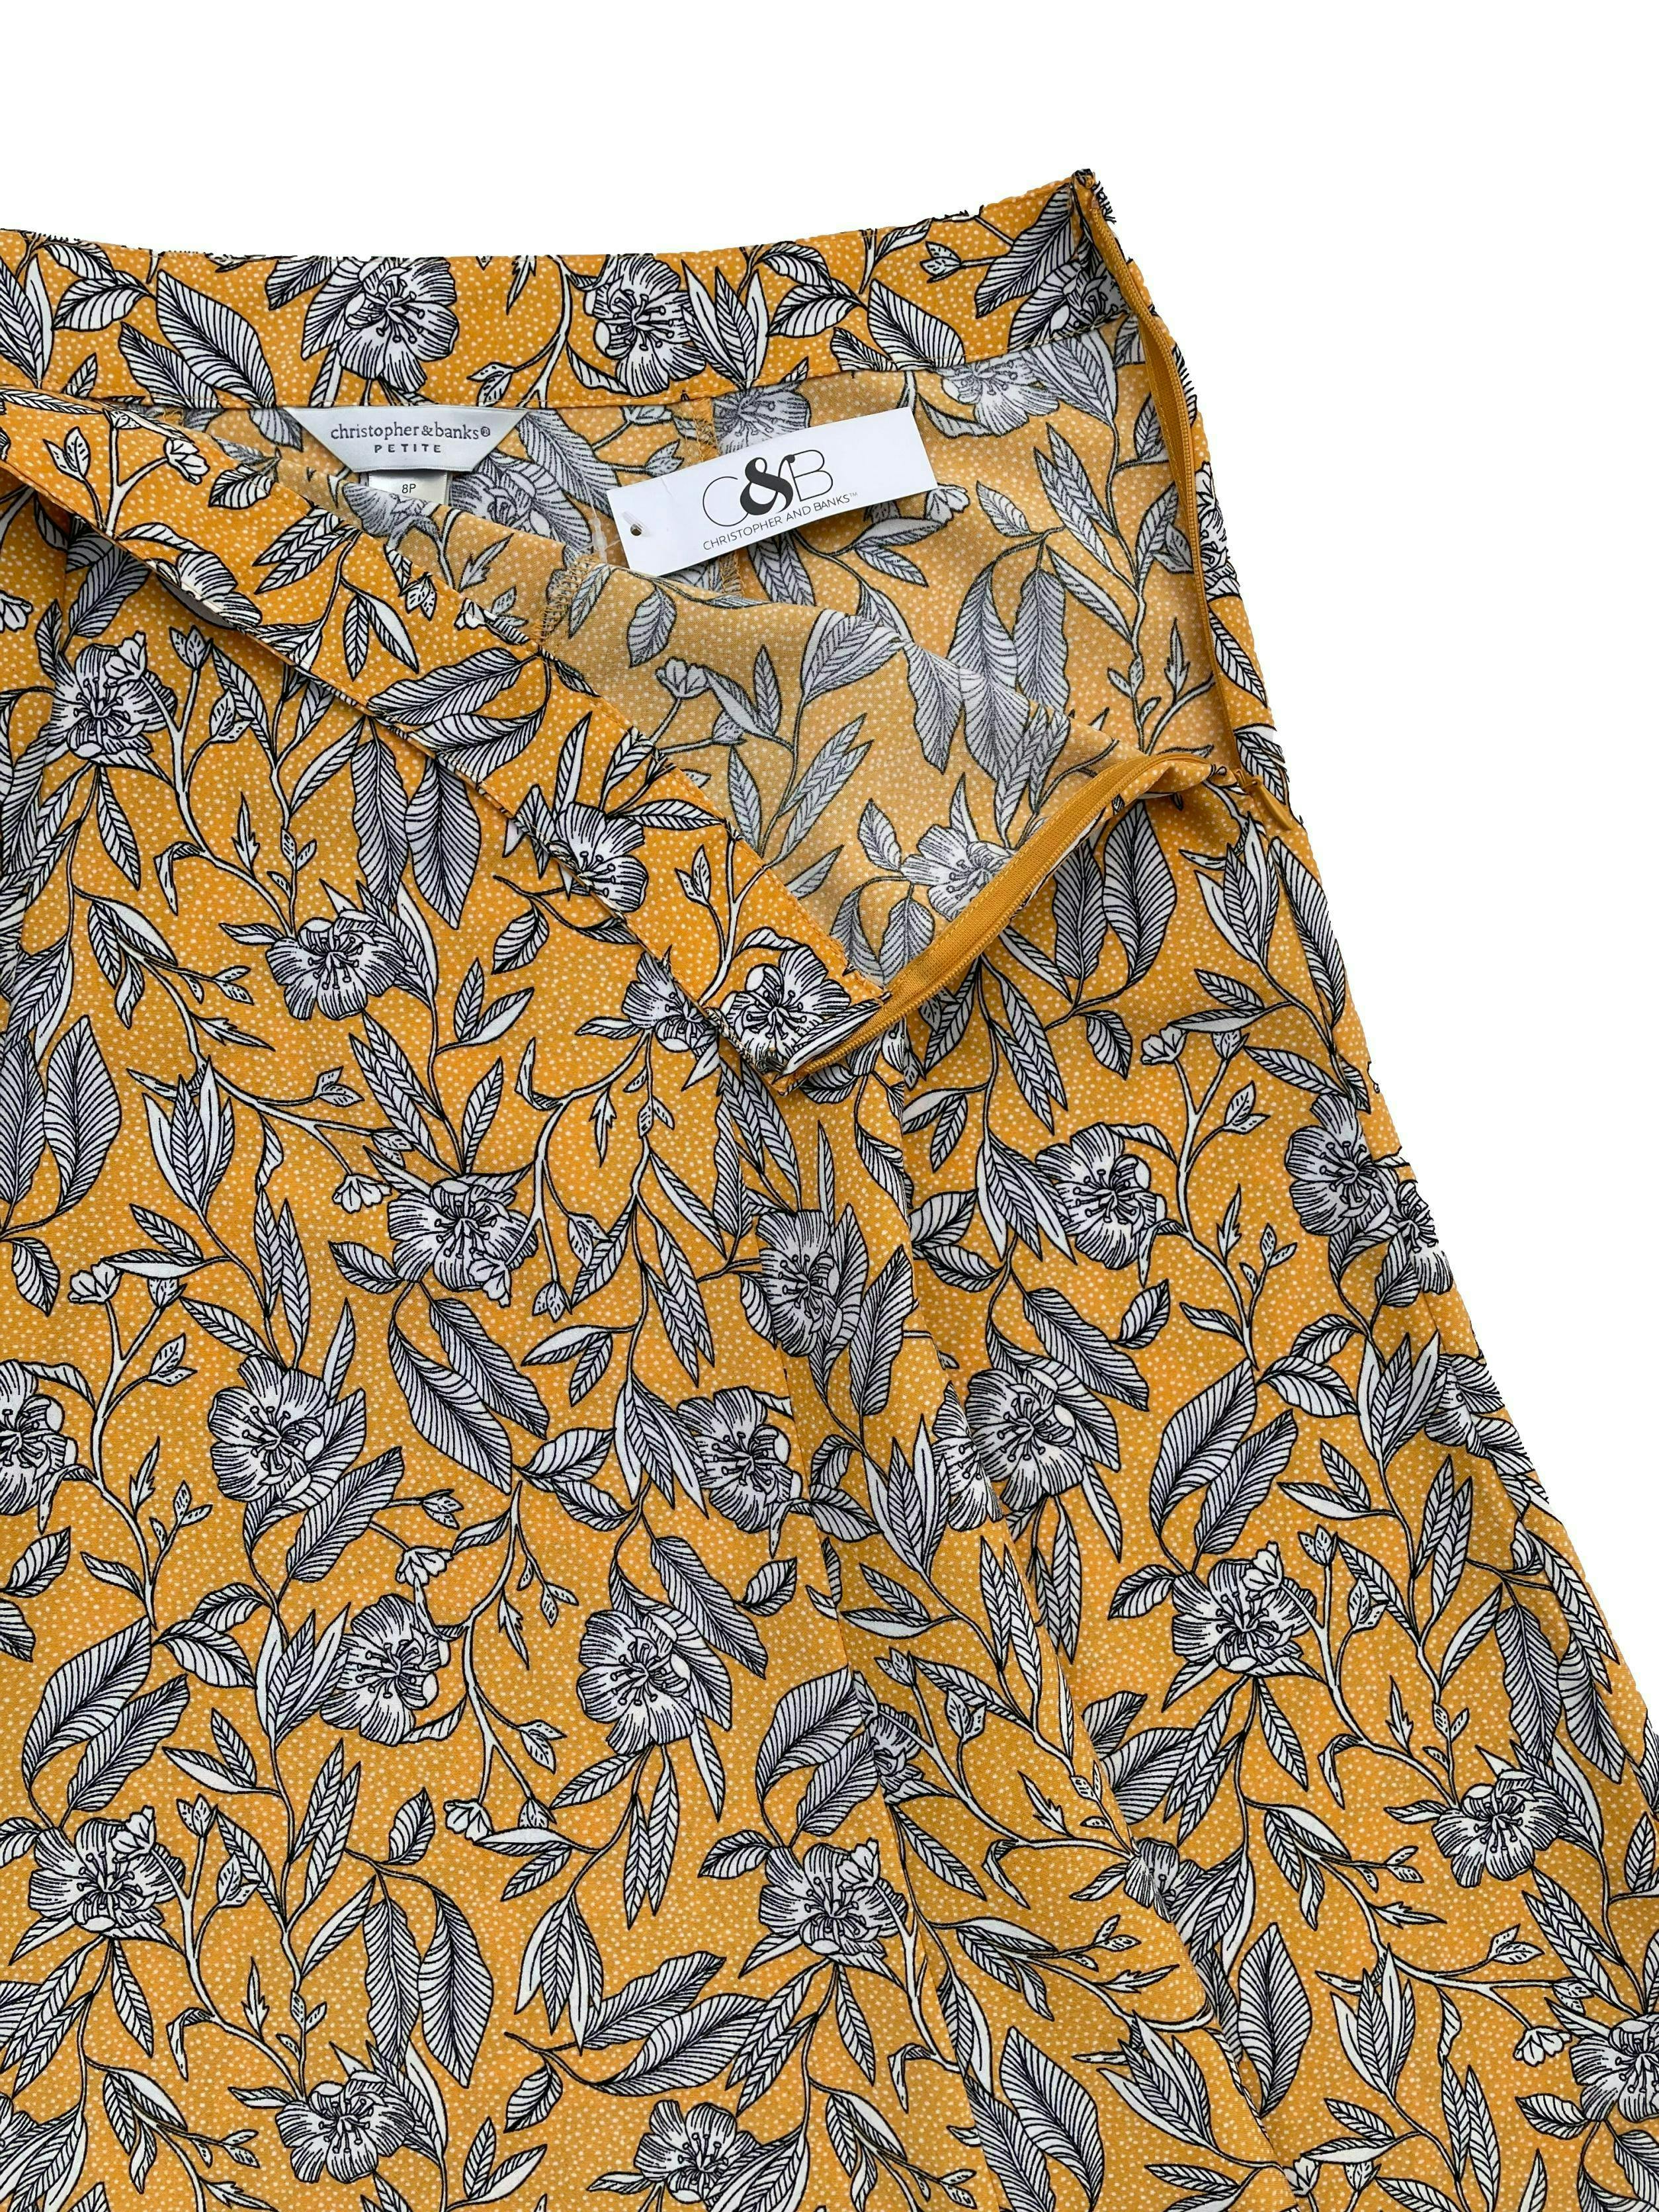 Falda Christopher&Banks tela plana amarilla con flores estilo dibujo, corte semicampana con cierra lateral. Cintura 78cm Largo 65cm. Nuevo con etiqueta.